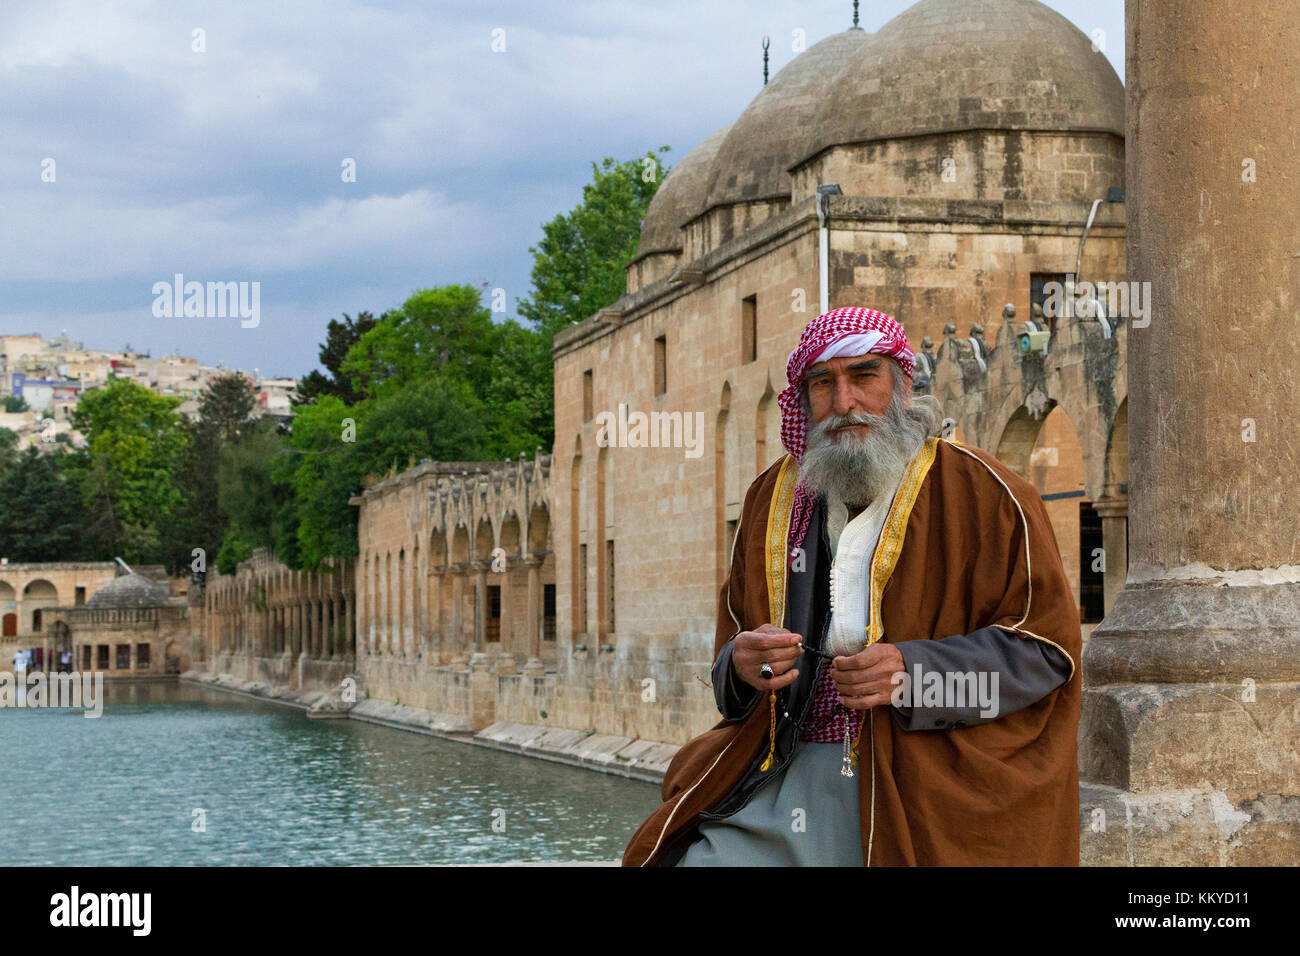 Hombre local con trajes étnicos, en el parque conocido como 'Abrahams Pond' o 'Balikligol' en Sanliurfa, Turquía. Foto de stock